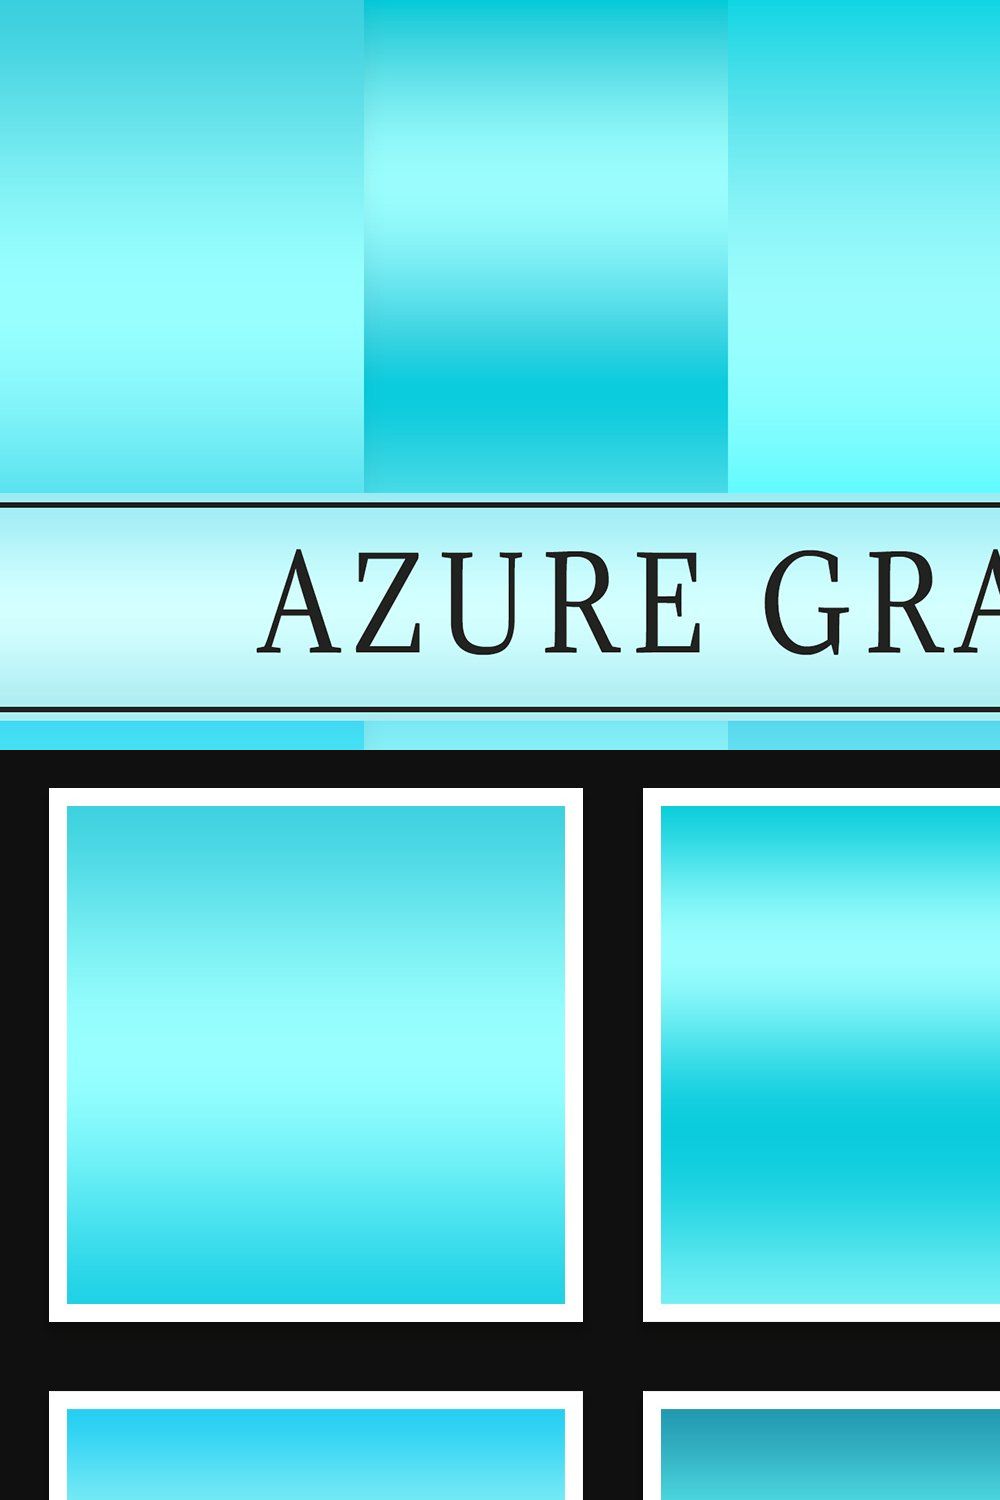 Azure Gradients pinterest preview image.